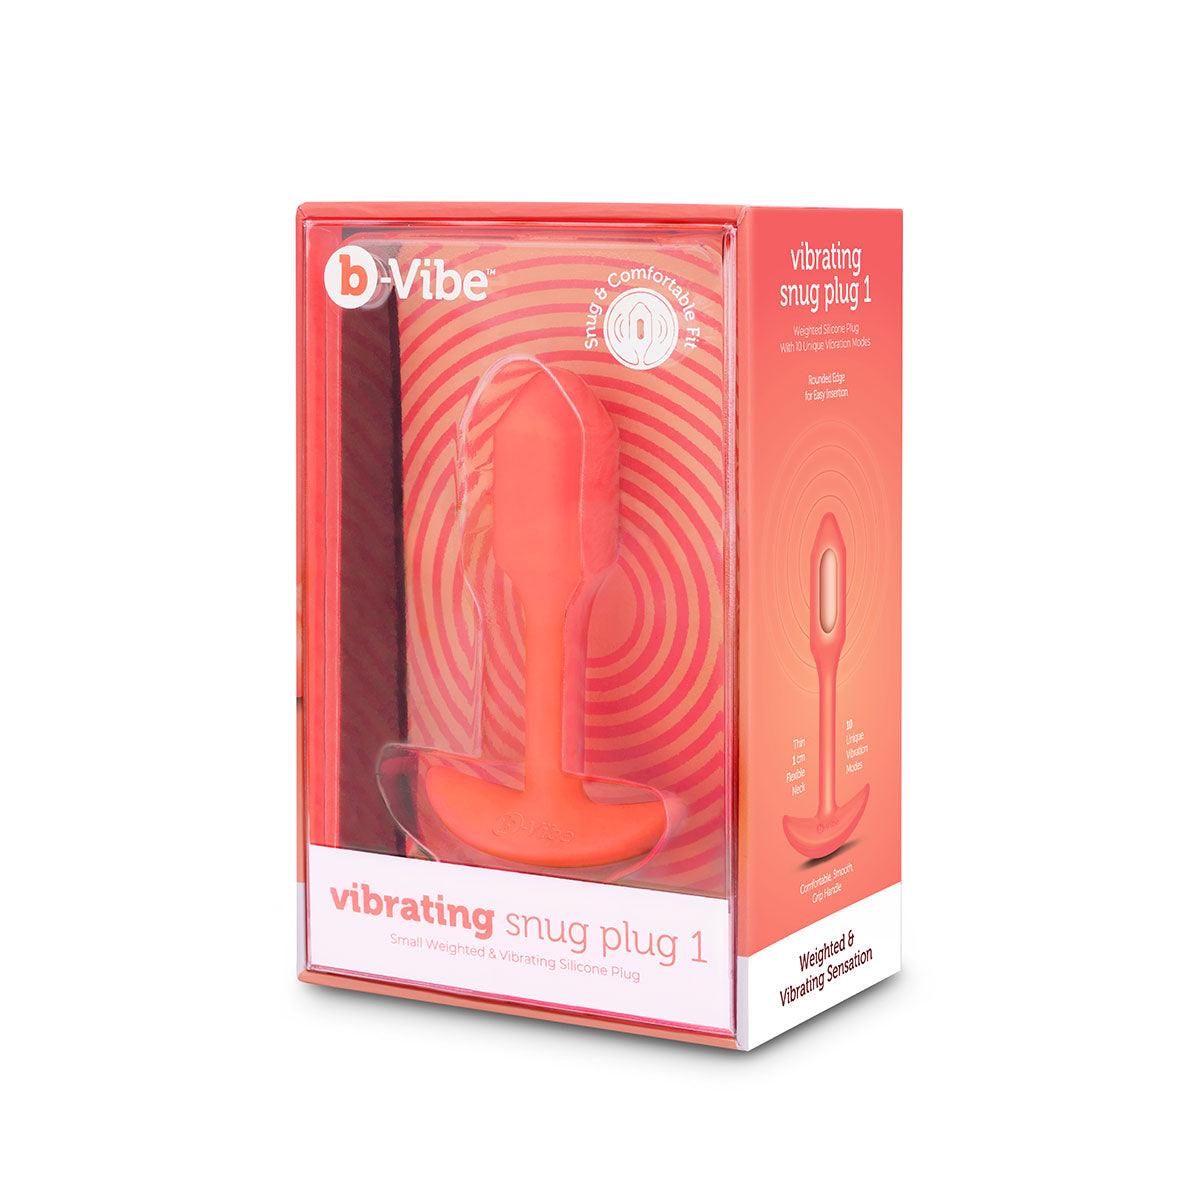 B-Vibe Vibrating Snug Plug 1 (S) - Orange - shop enby